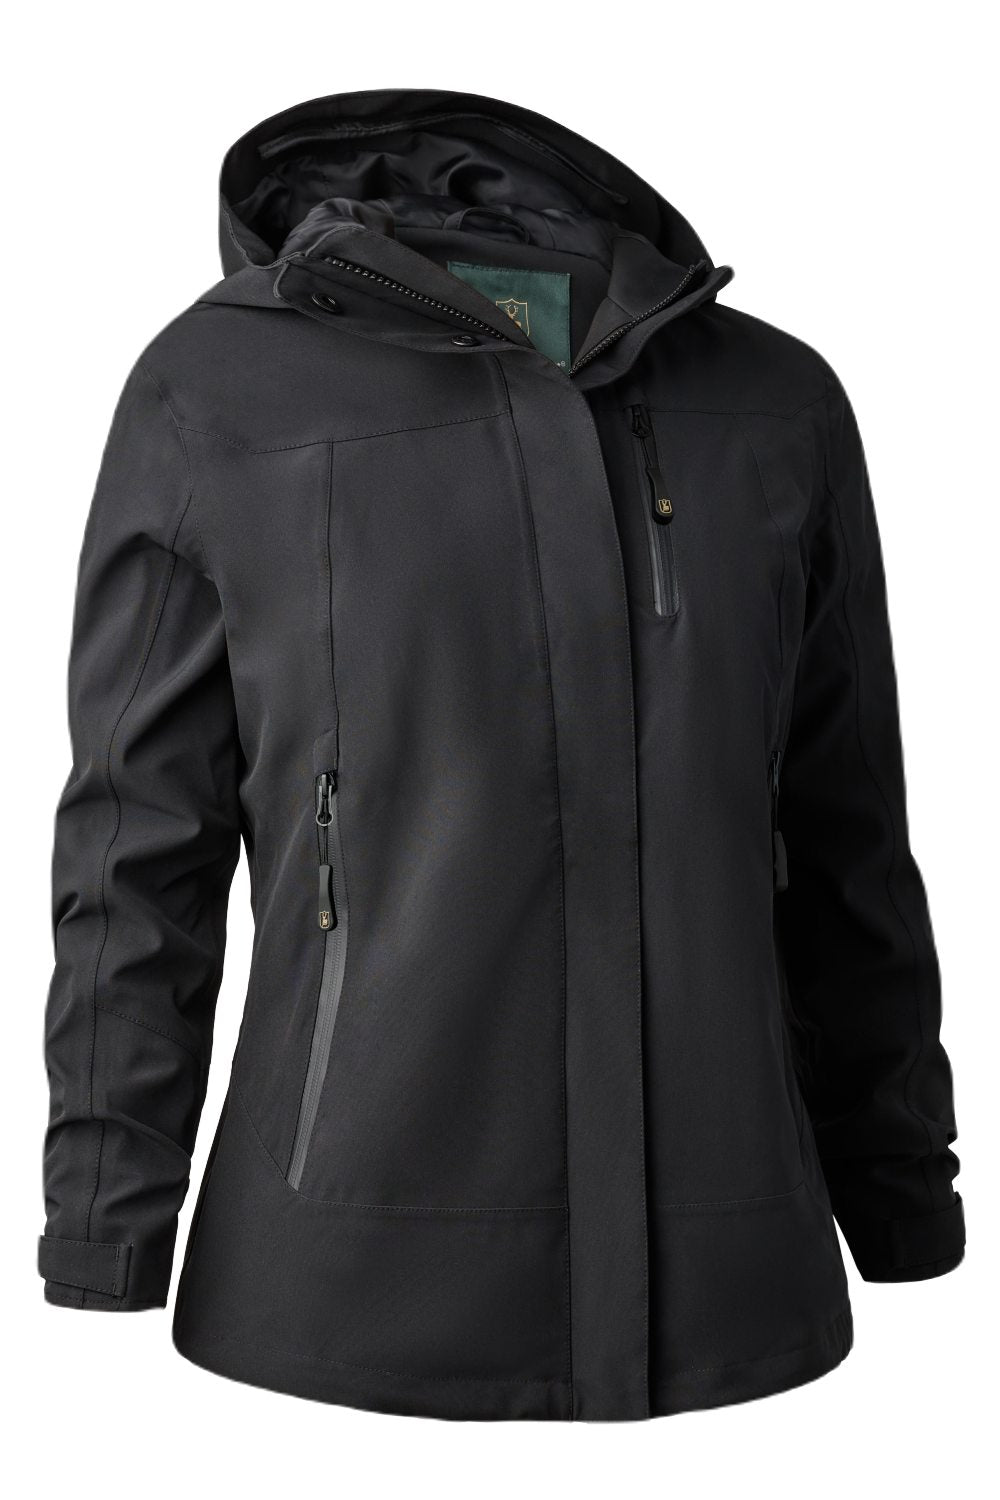 Deerhunter Lady Sarek Shell Jacket with hood In Black 